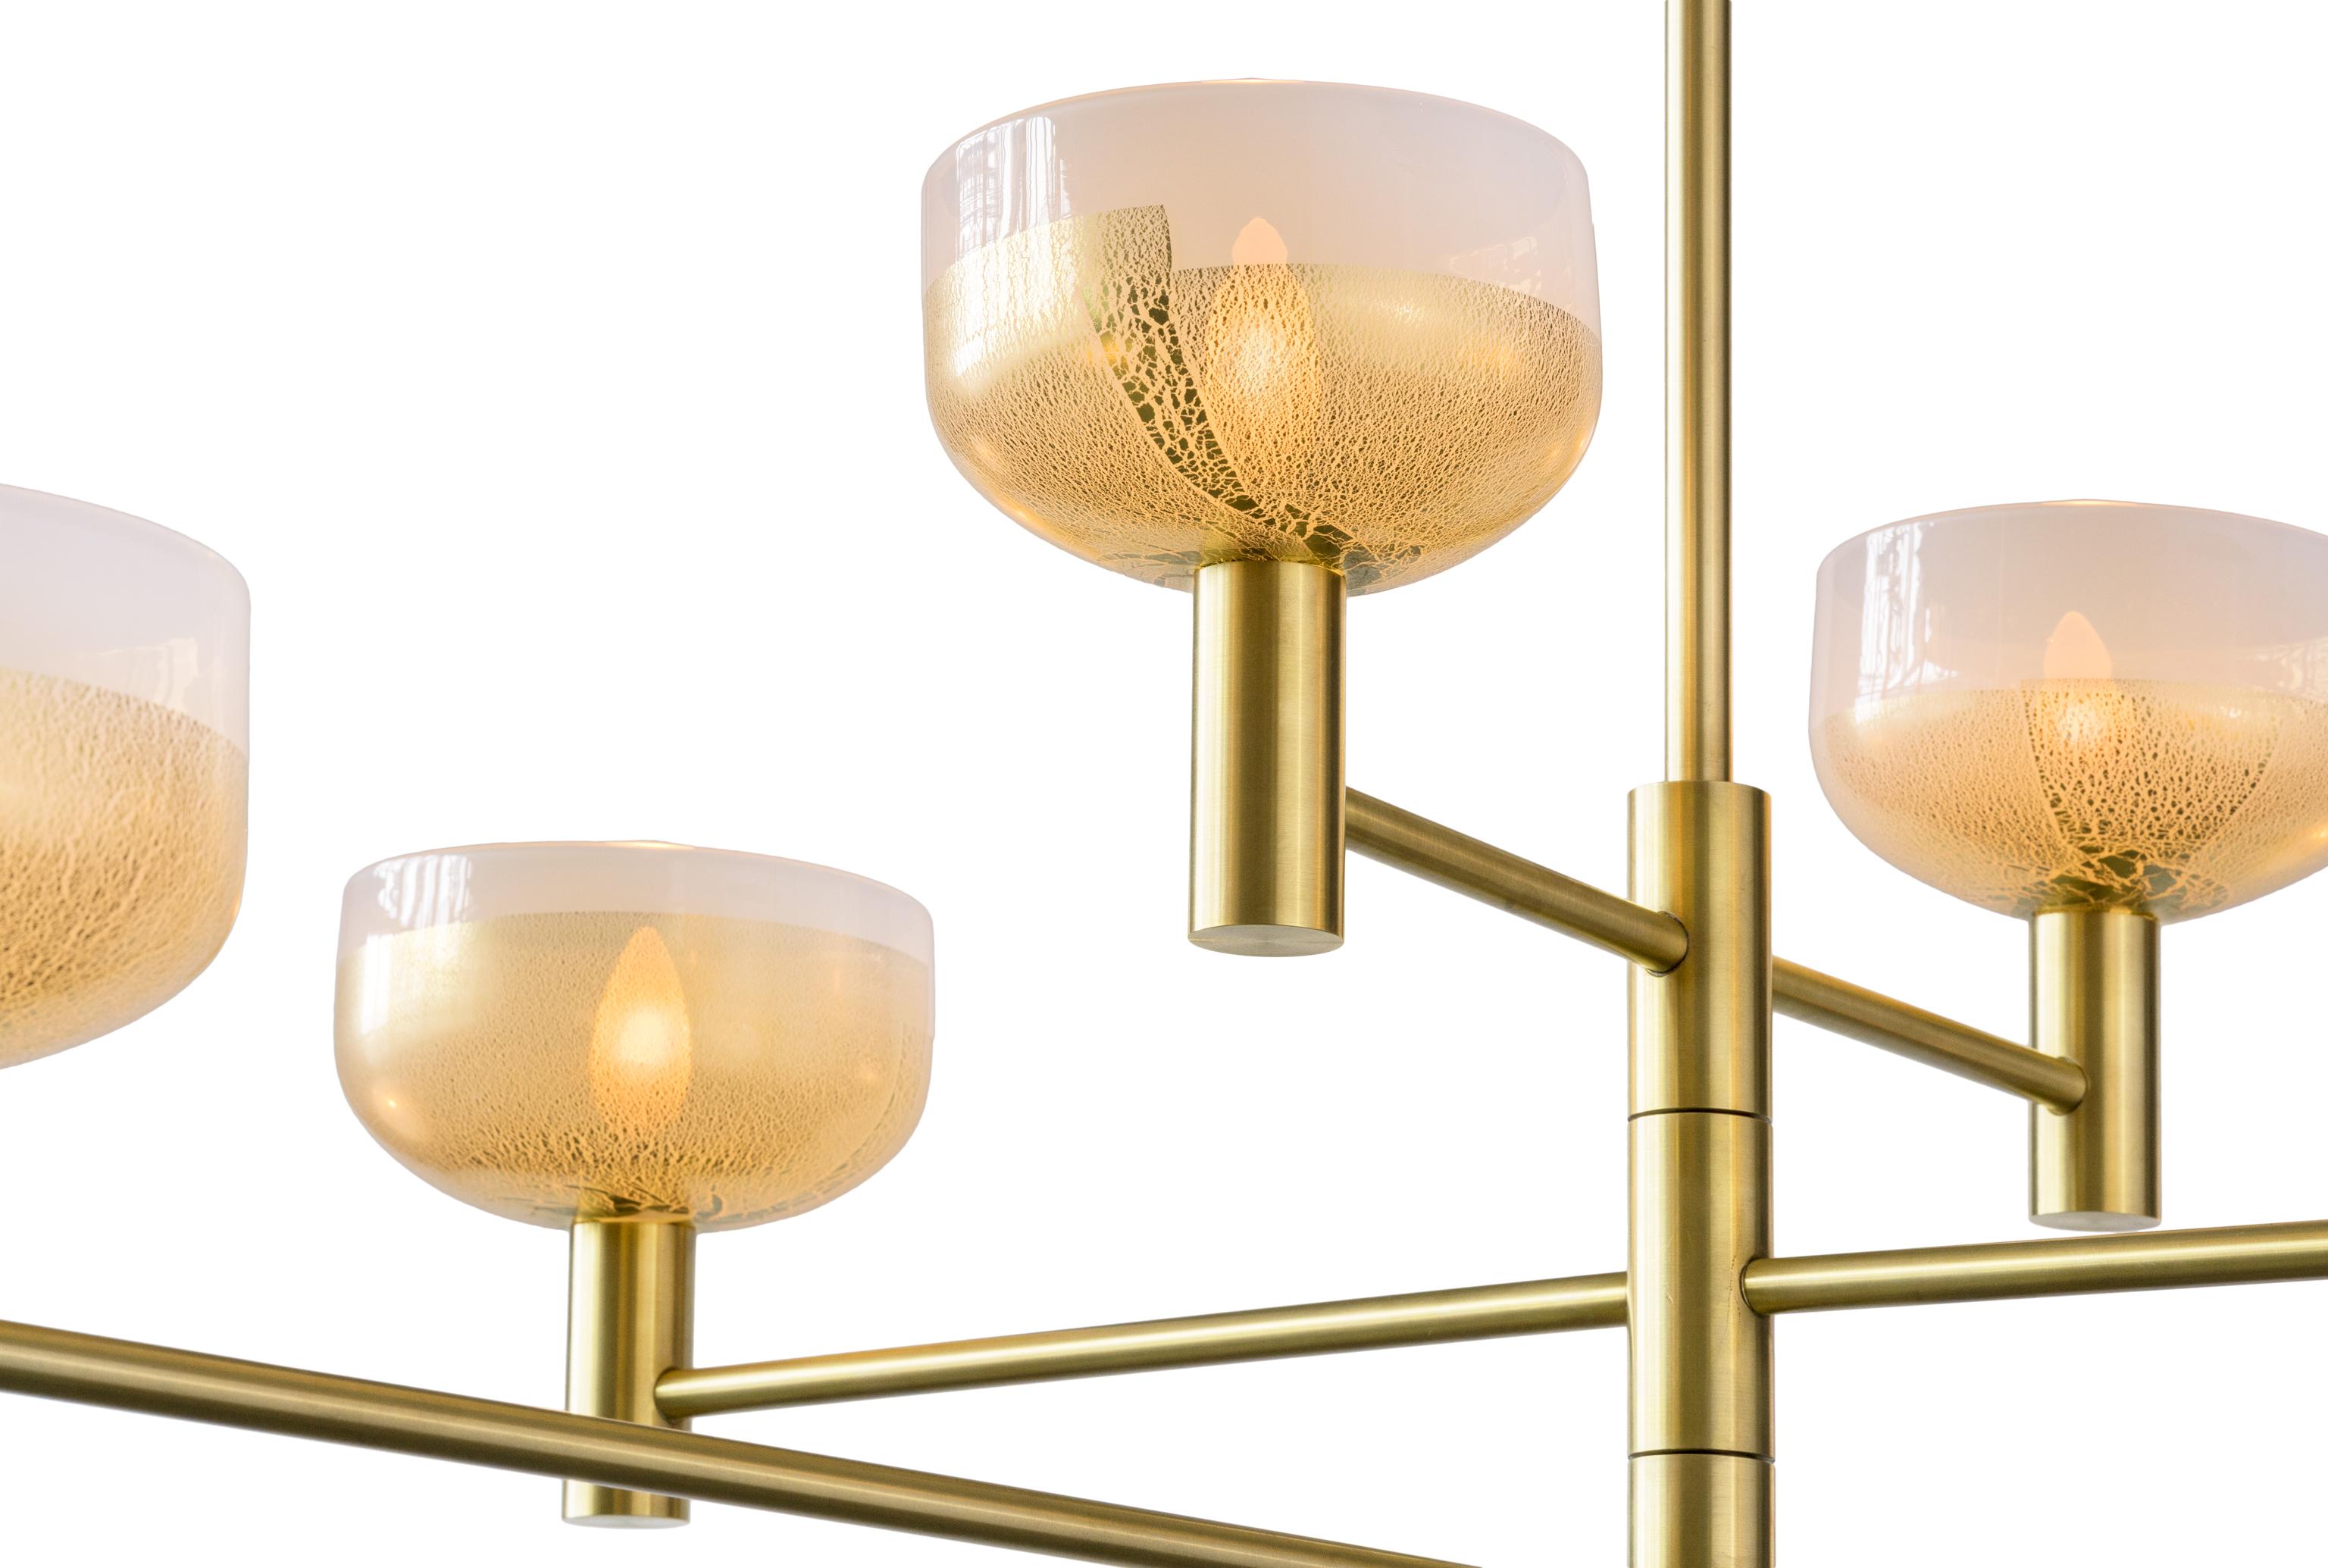 Le lustre Otto Luce s'inspire des luminaires trouvés en Italie au milieu du siècle dernier. Ce design original et breveté est fabriqué sur commande avec du verre soufflé doré et du métal fini à la main, créant ainsi un lustre qui s'inscrit dans la